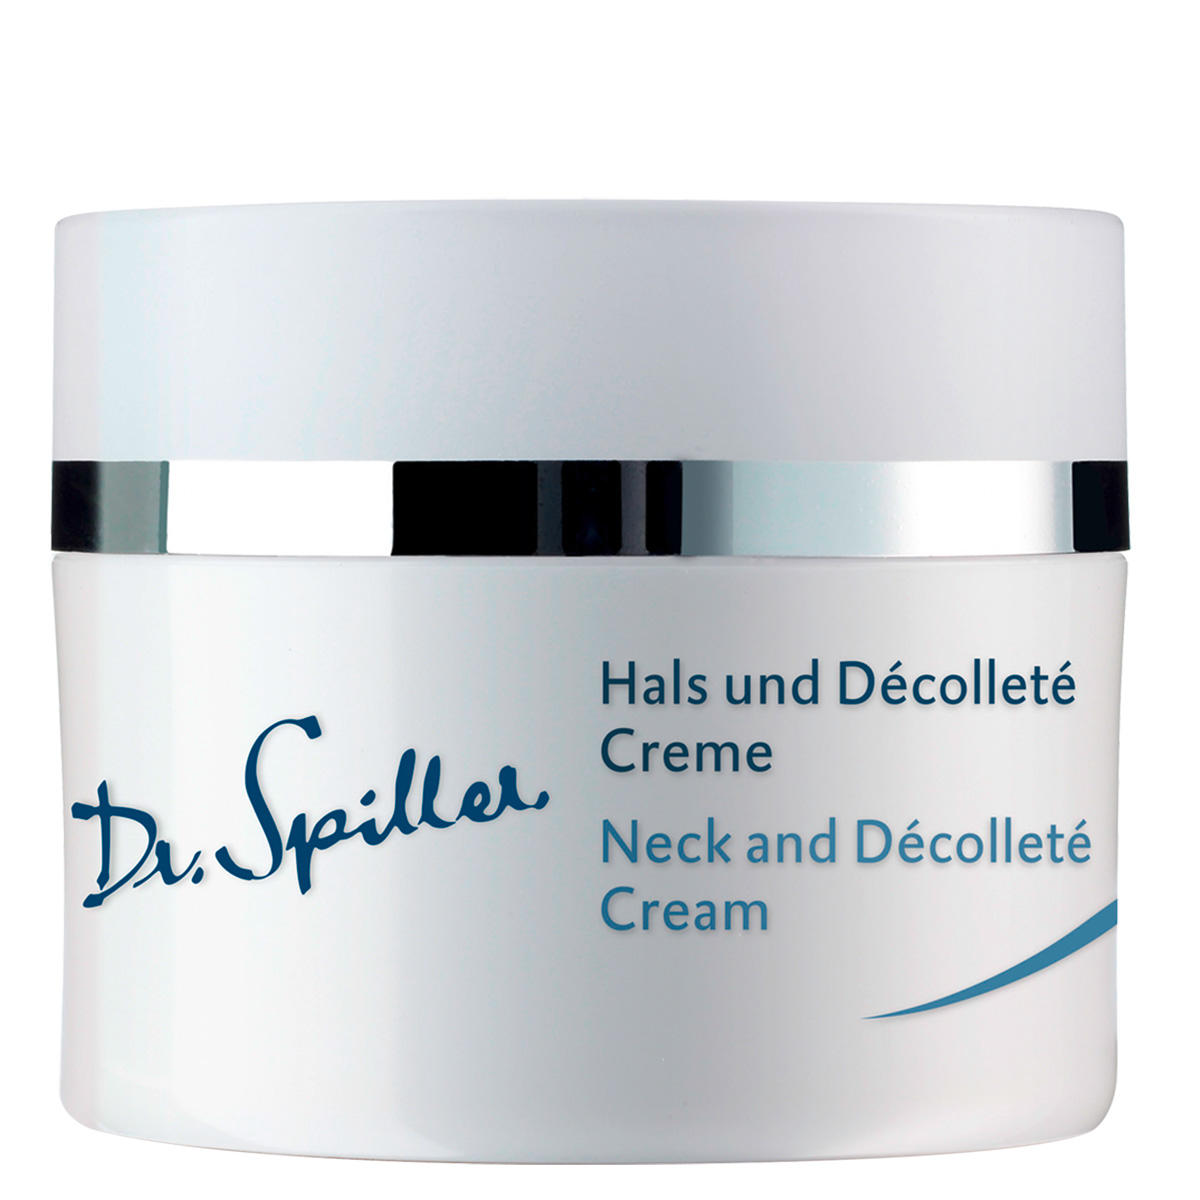 Dr. Spiller Hals und Décolleté Creme 50 ml - 1